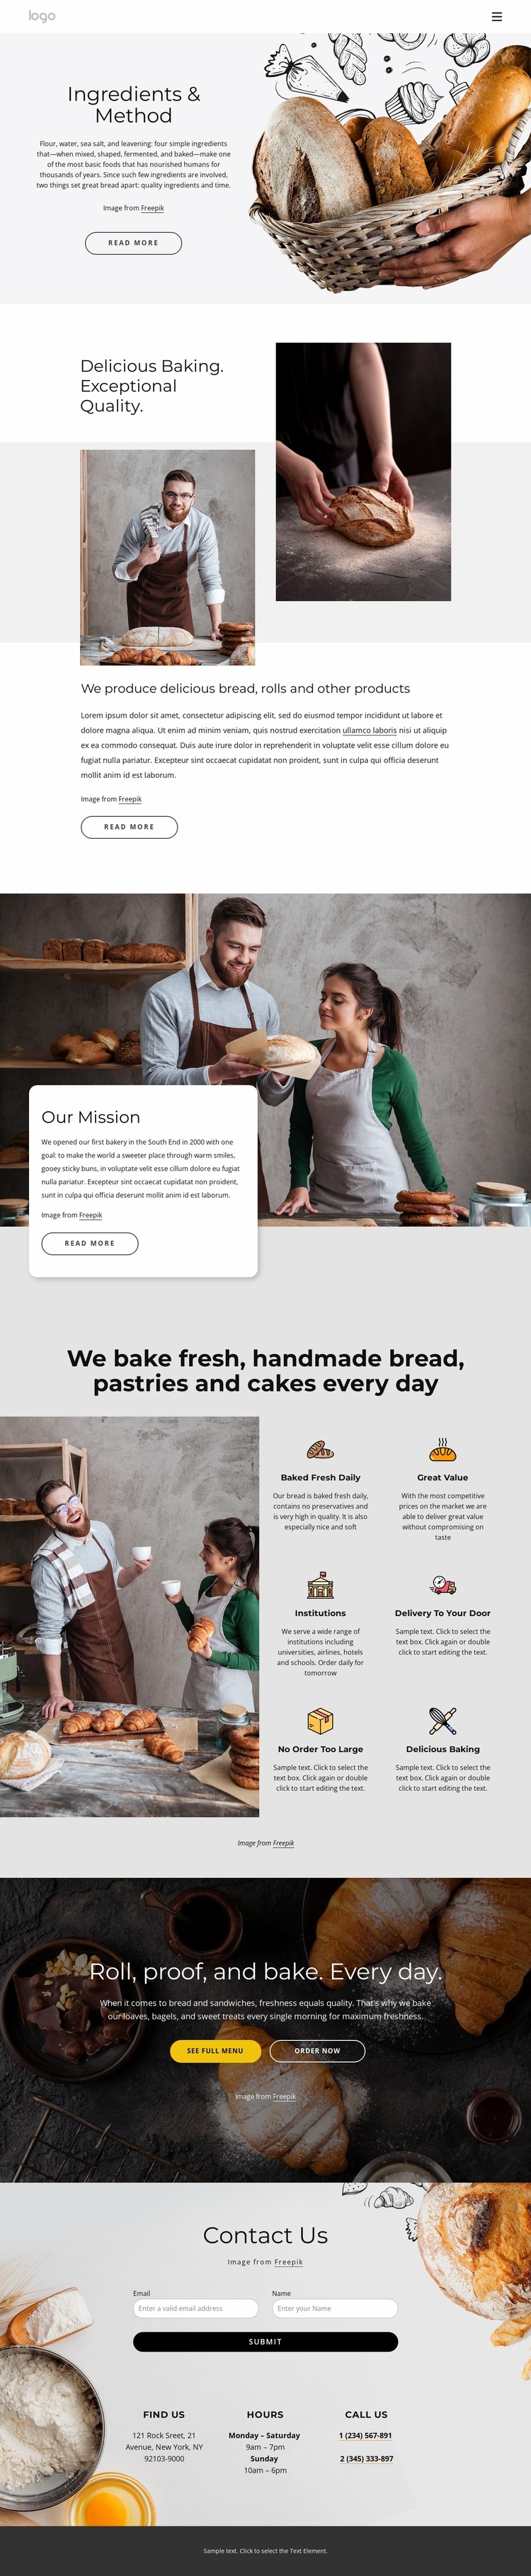 We bake handmade bread Html Website Builder